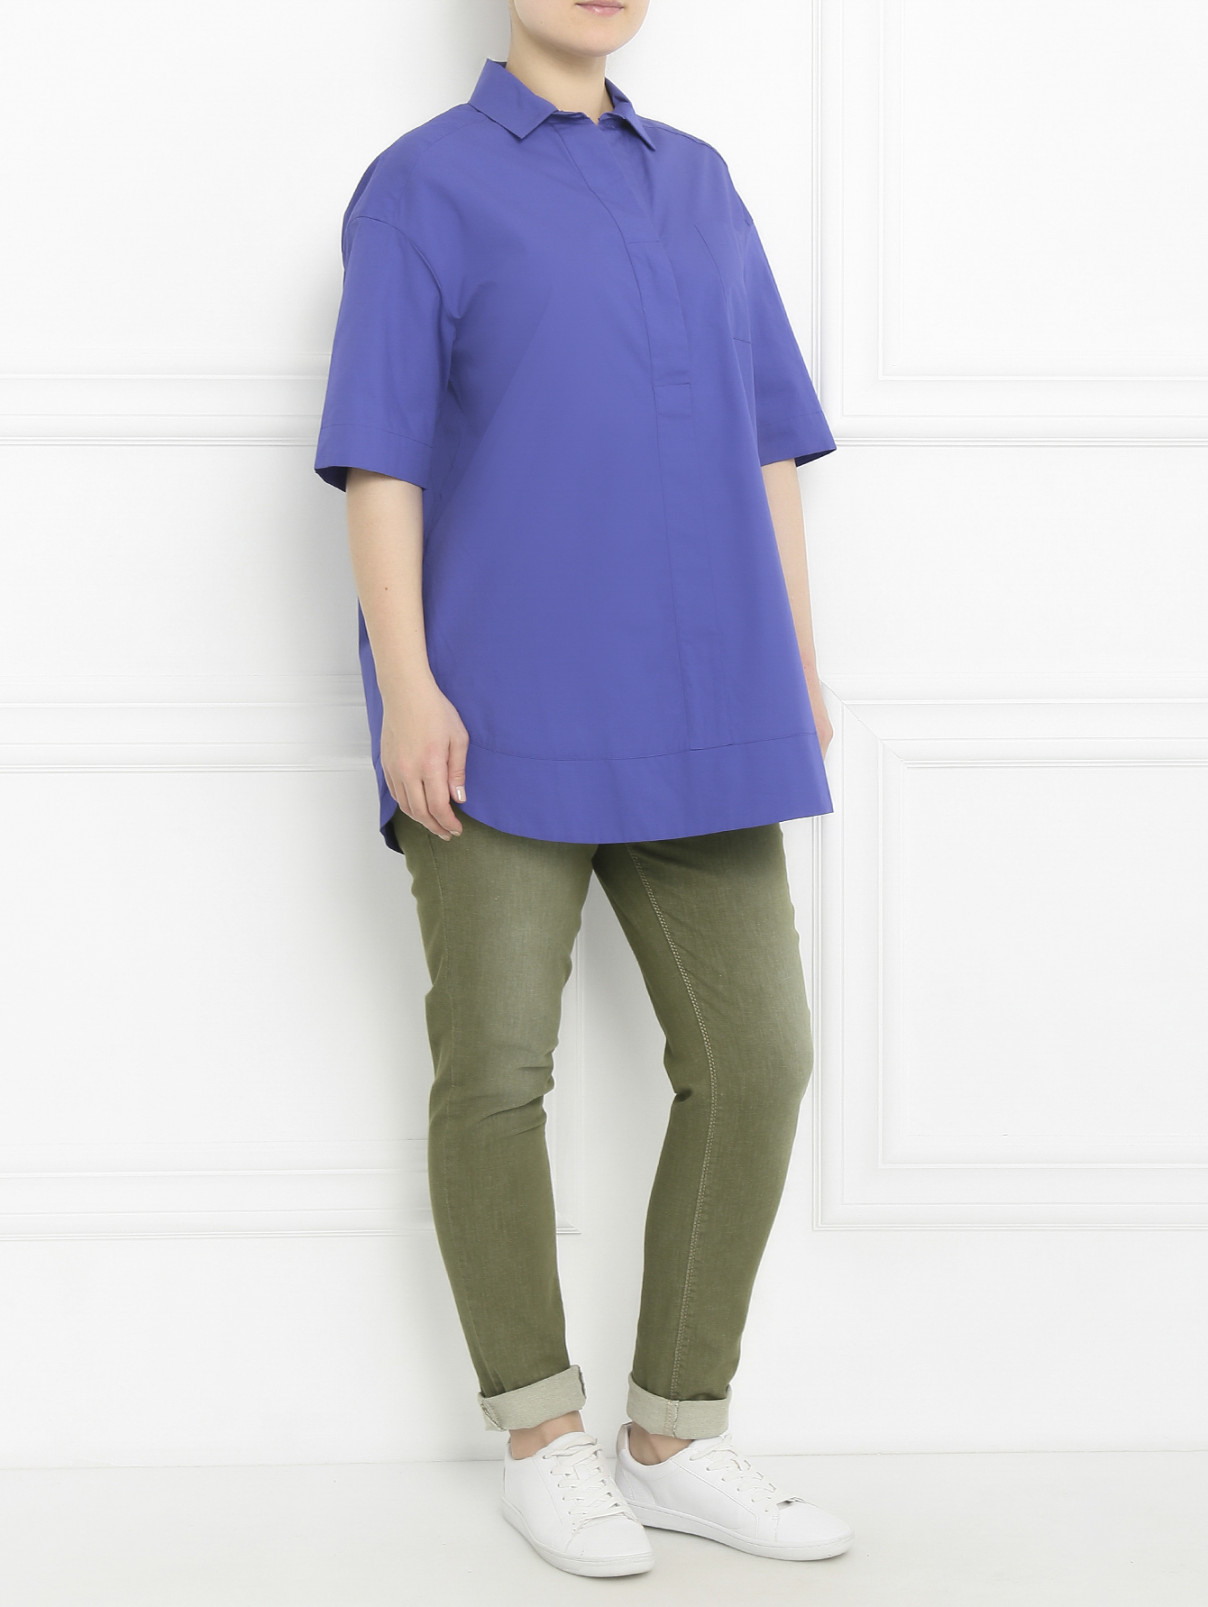 Блуза из хлопка свободного кроя Marina Sport  –  Модель Общий вид  – Цвет:  Фиолетовый